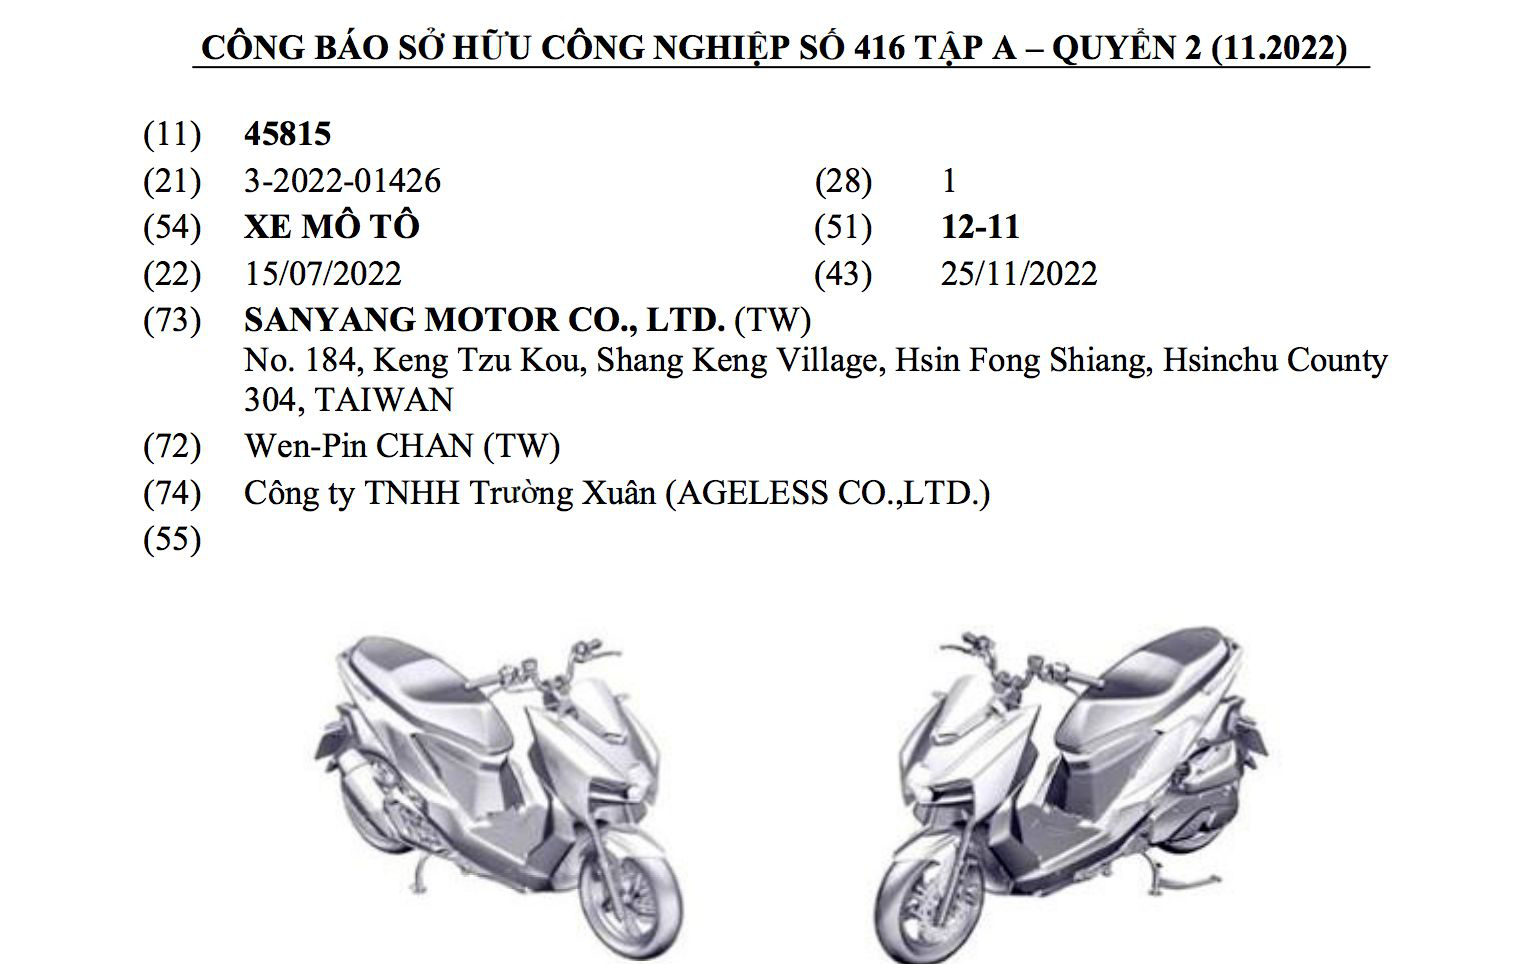 Honda CBR150R  môtô cỡ nhỏ đa năng cho người Việt  VnExpress